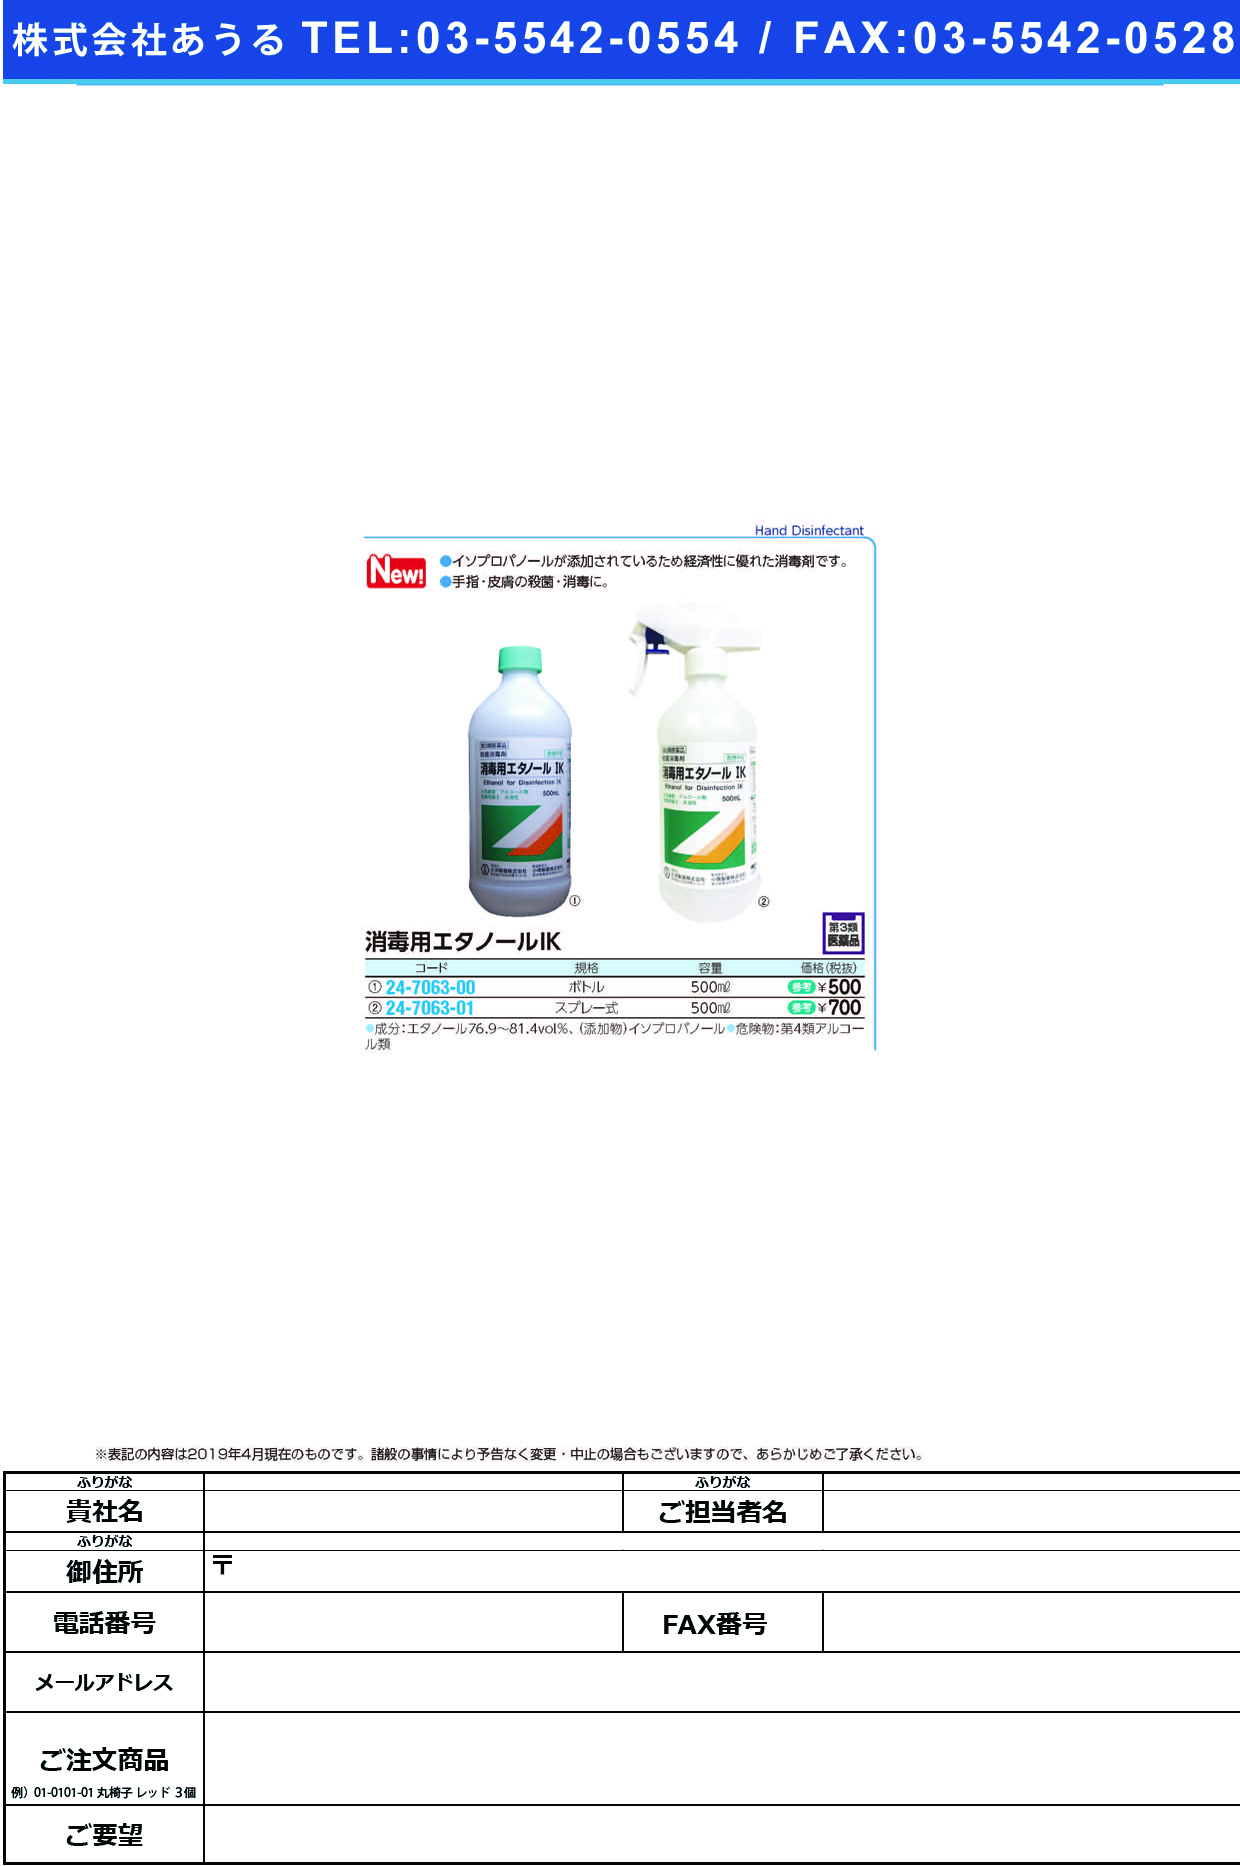 消毒用エタノールＩＫ（医薬品）500ML(ﾎﾞﾄﾙ) ｼｮｳﾄﾞｸﾖｳｴﾀﾉｰﾙIK(太洋紙業)